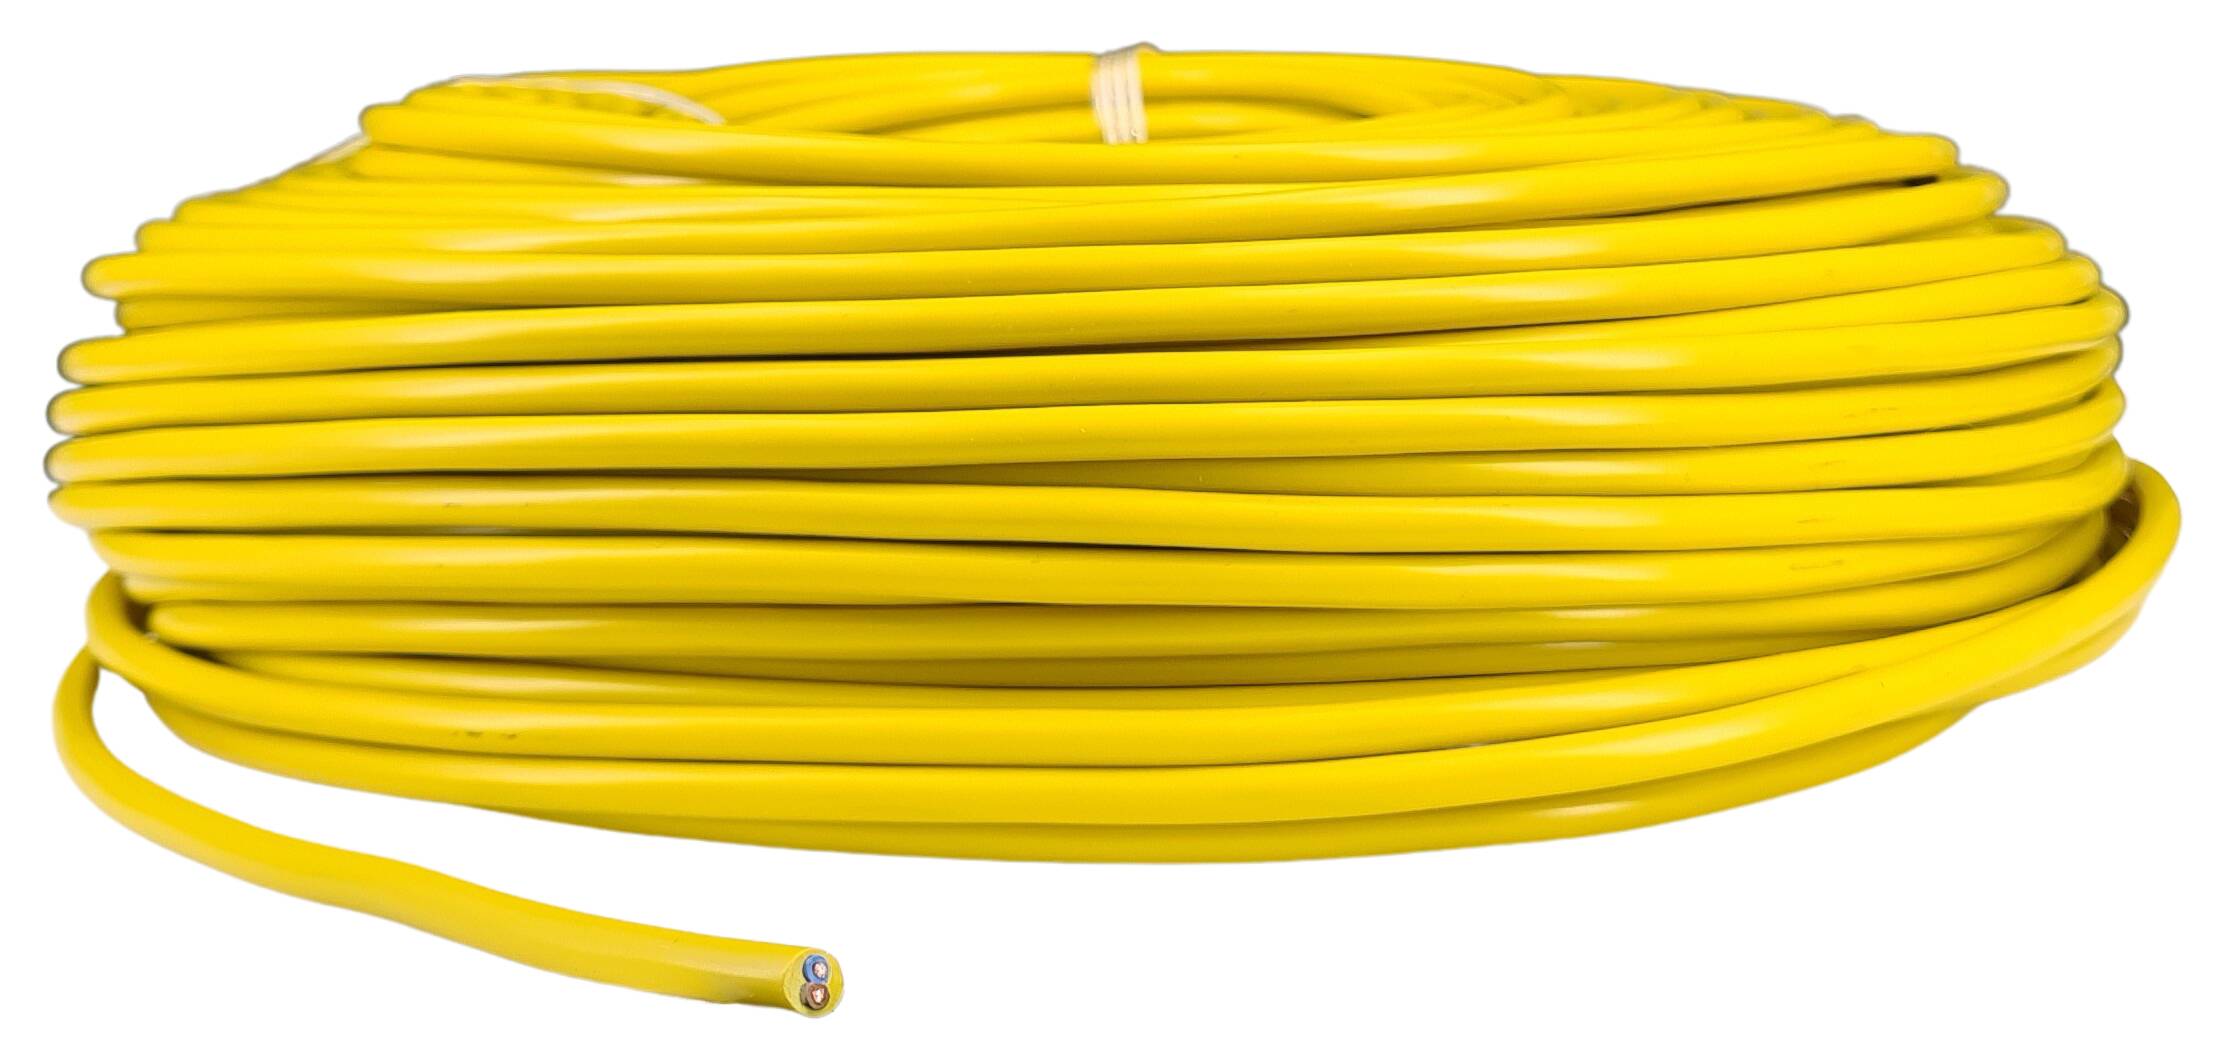 Kabel 2x0,75 rund H03VV-F ähnlich RAL 1021 gelb